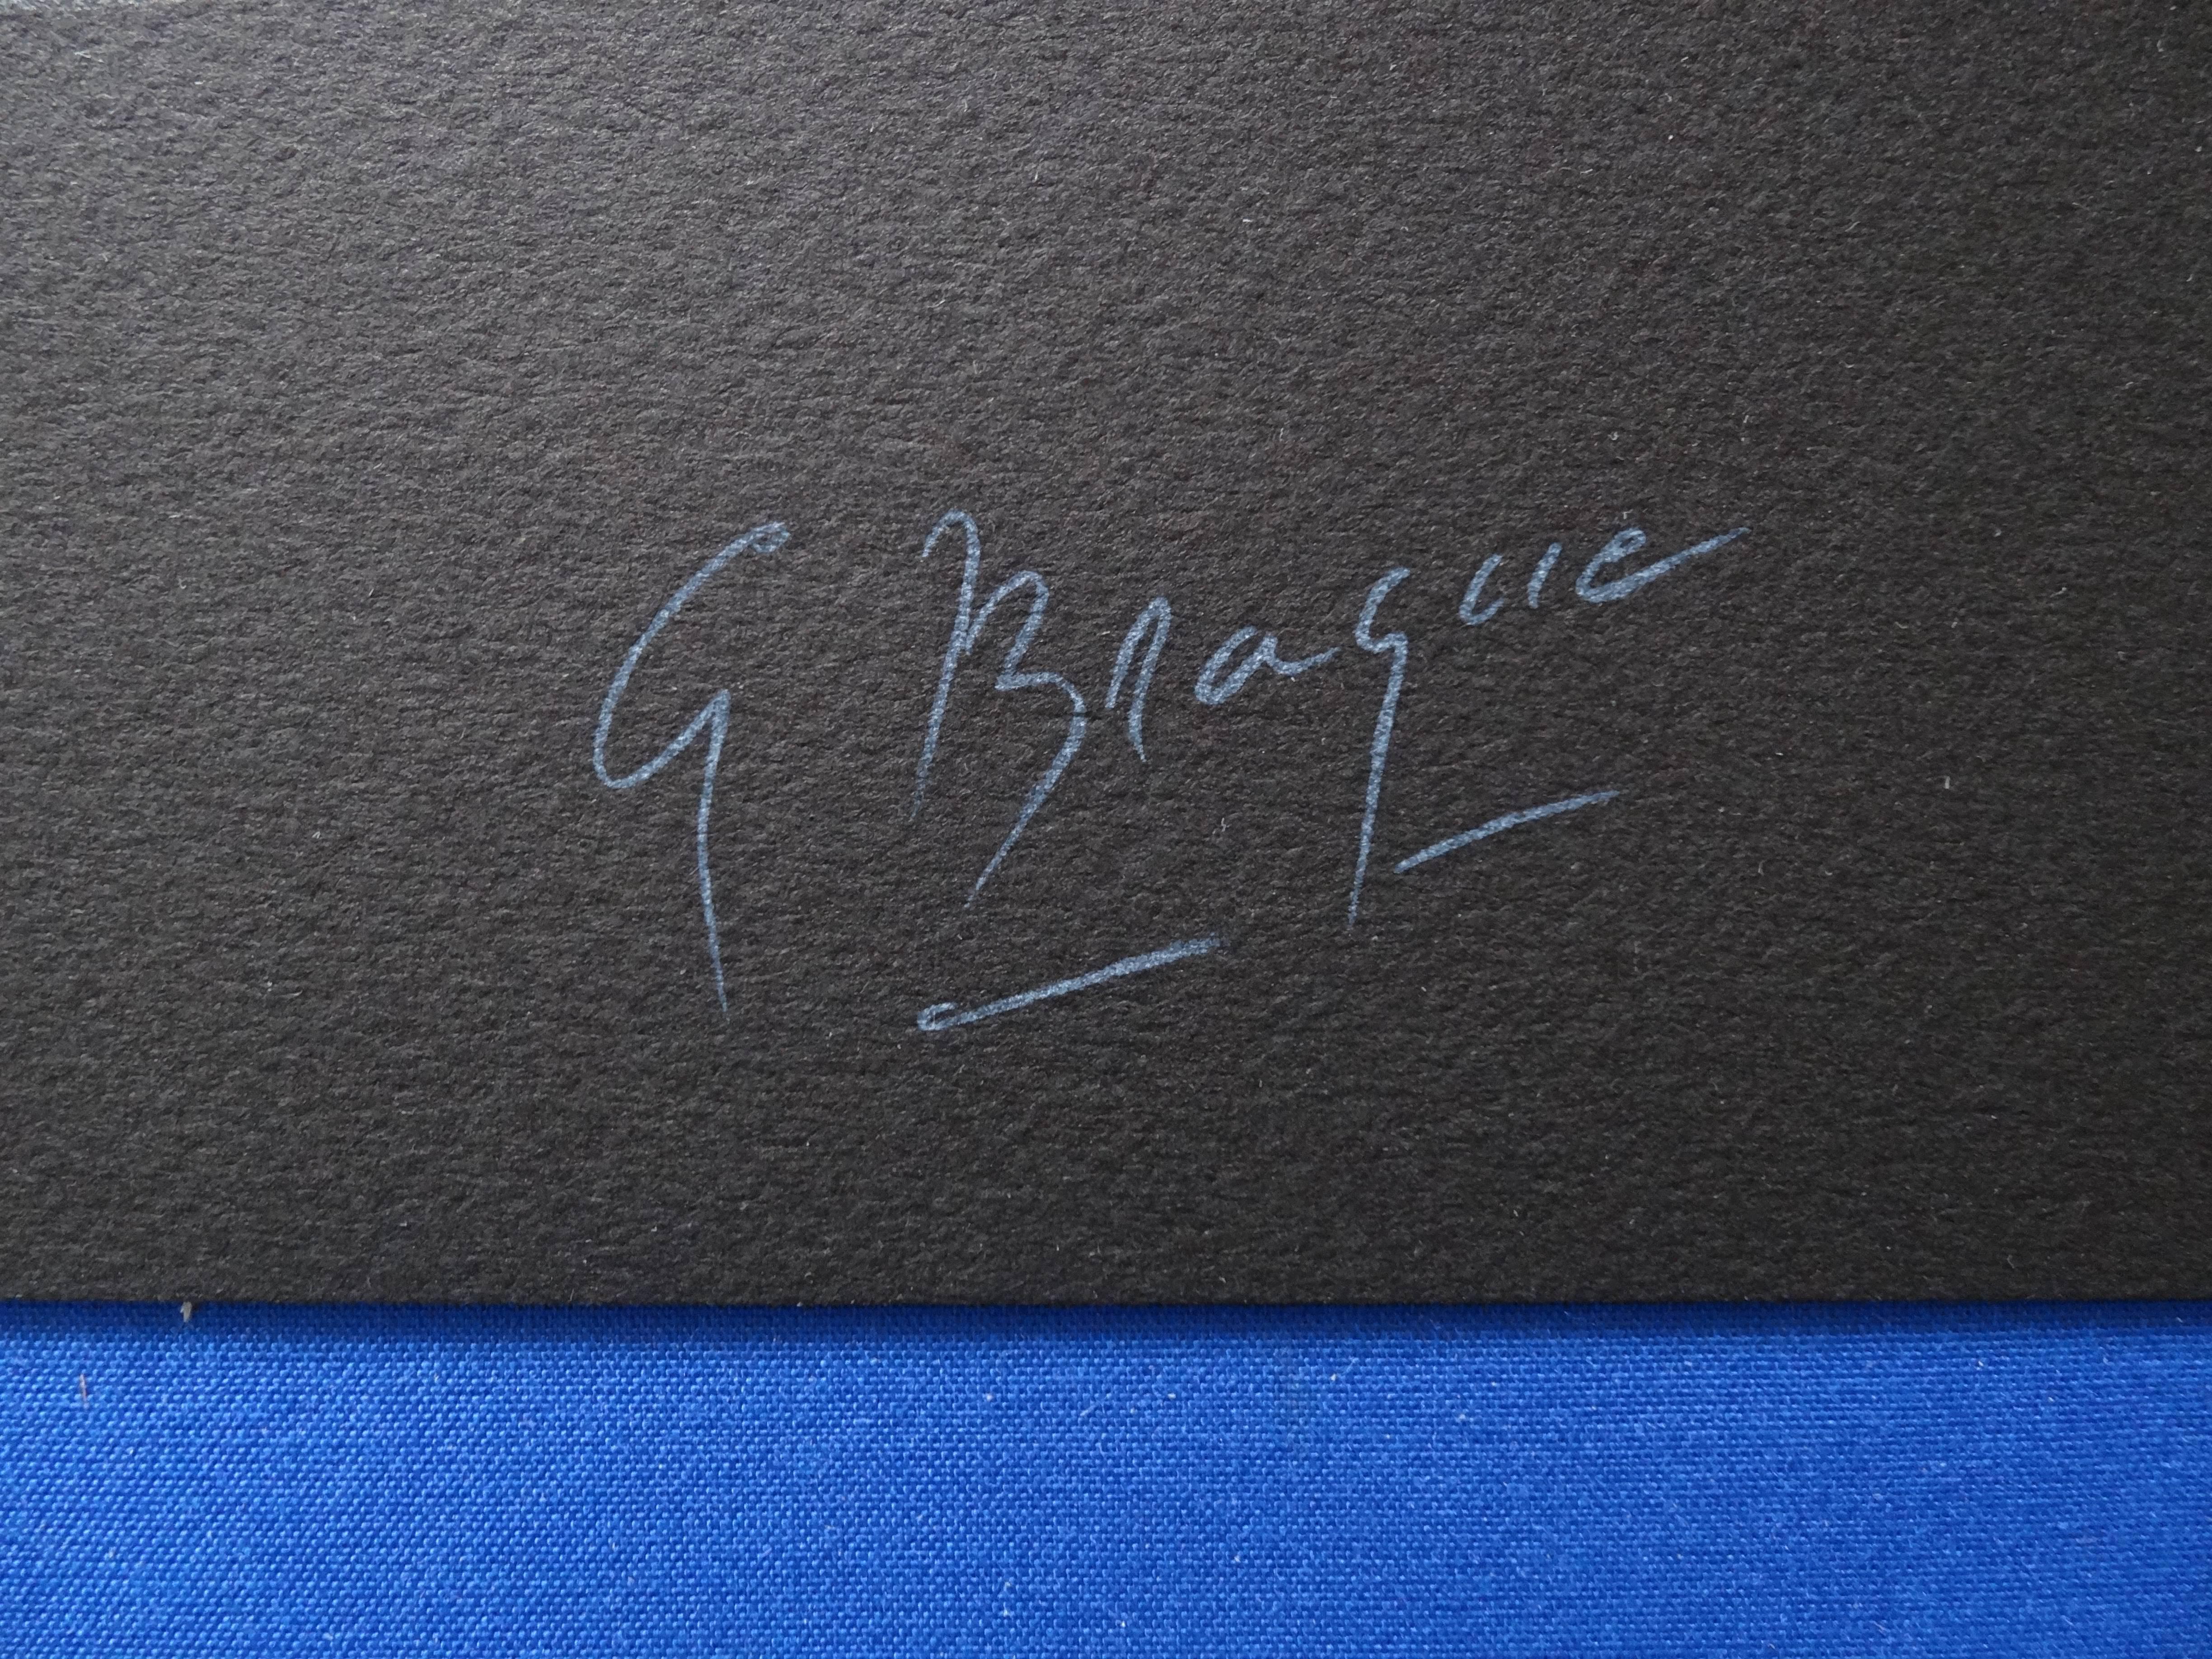 Mythologie : profil grec - Lithographie - 399 exemplaires - Print de George Braque